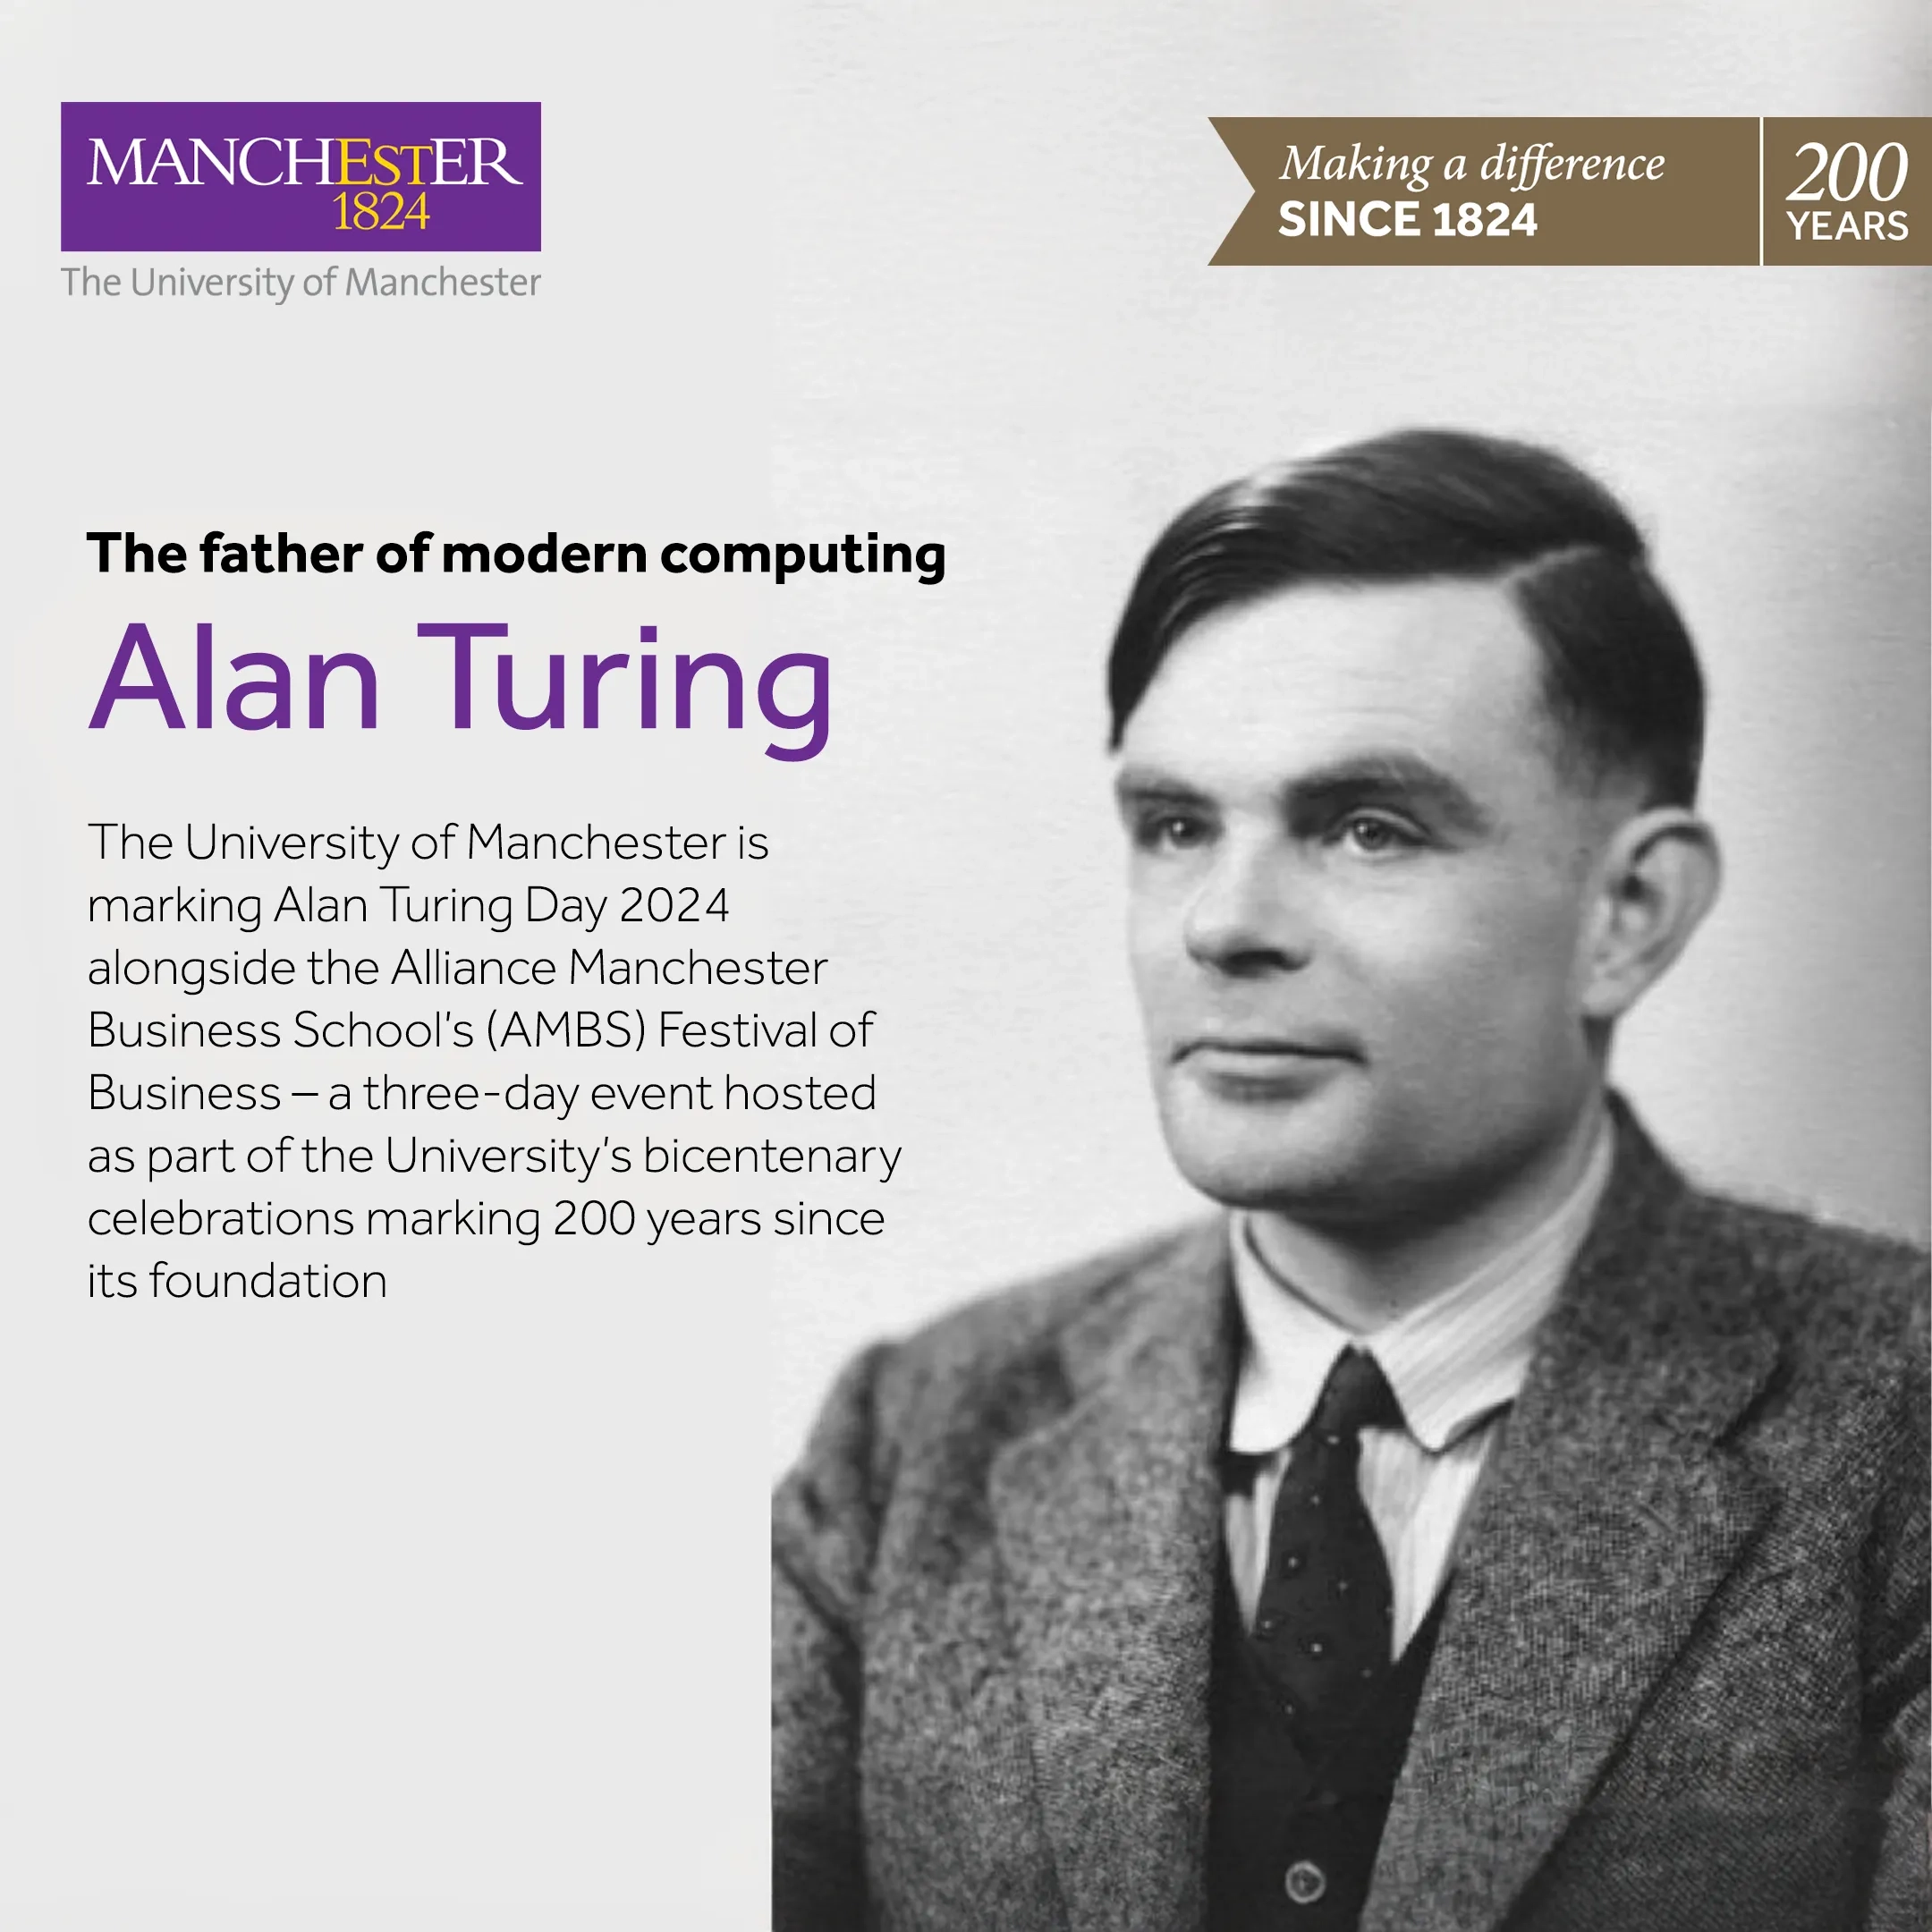 Alan Turing Day – 23 June 2024